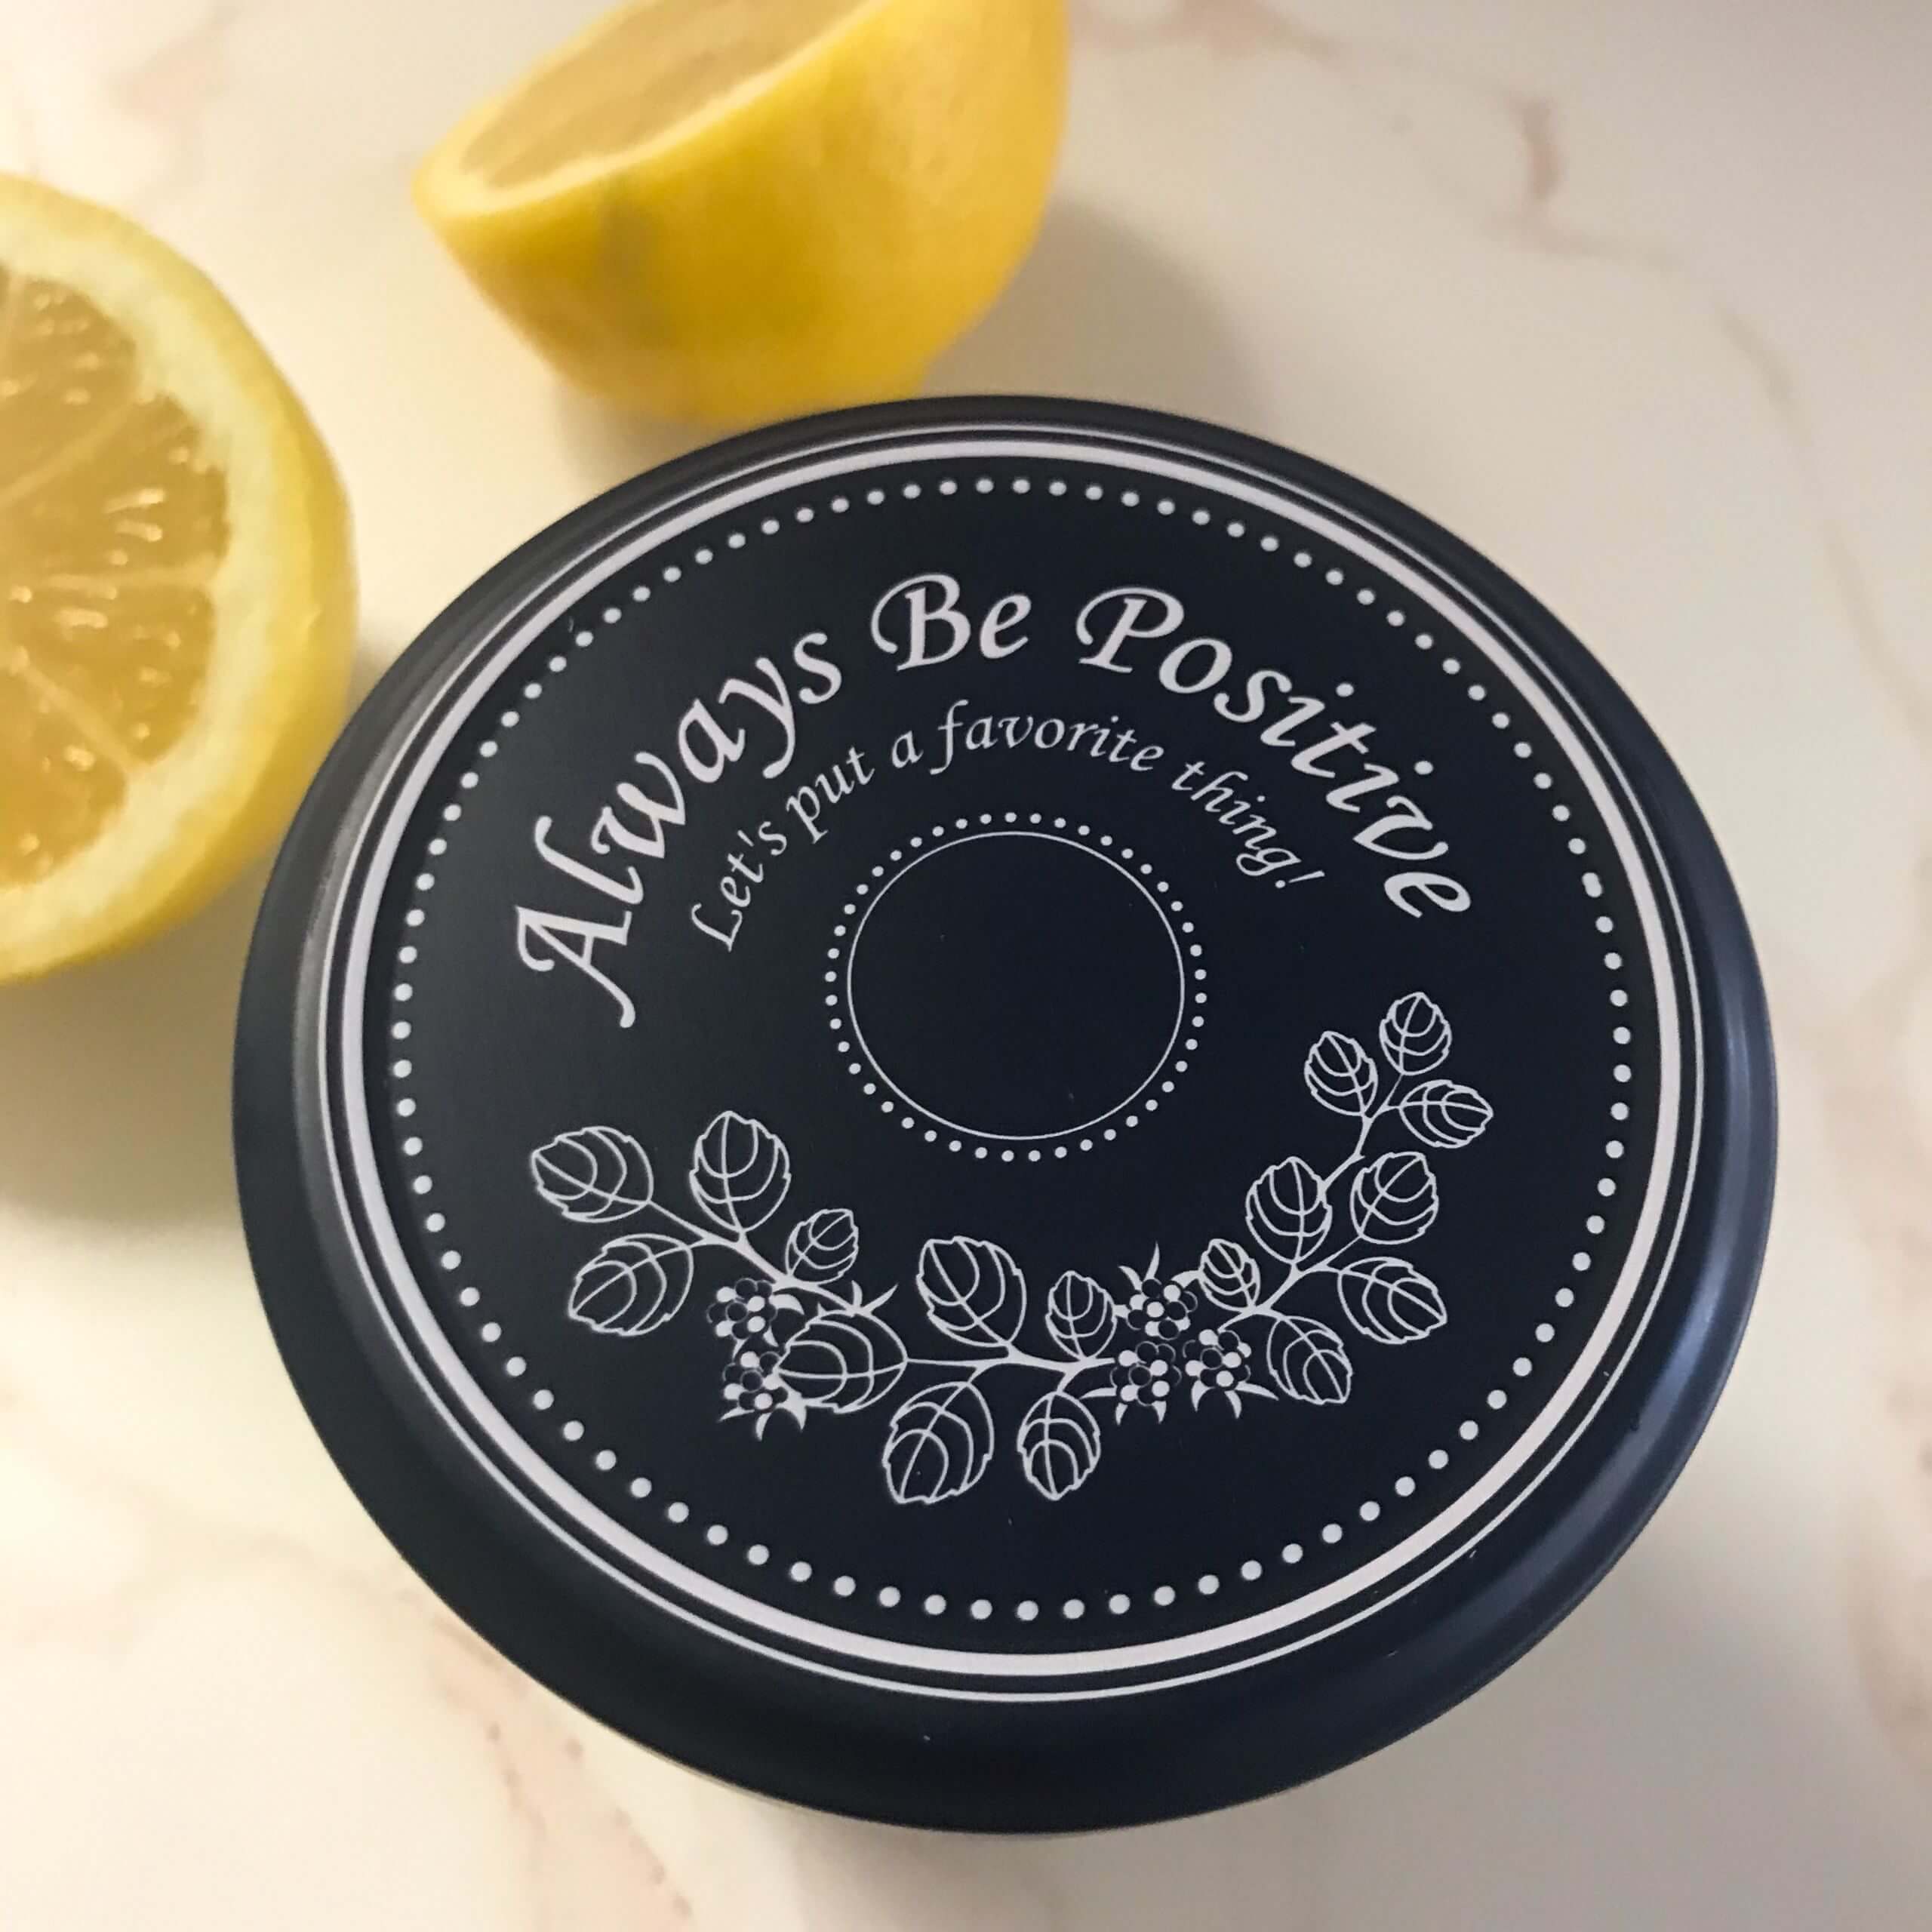 Lemon & Thyme Vinaigrette Dressing | My Curated Tastes